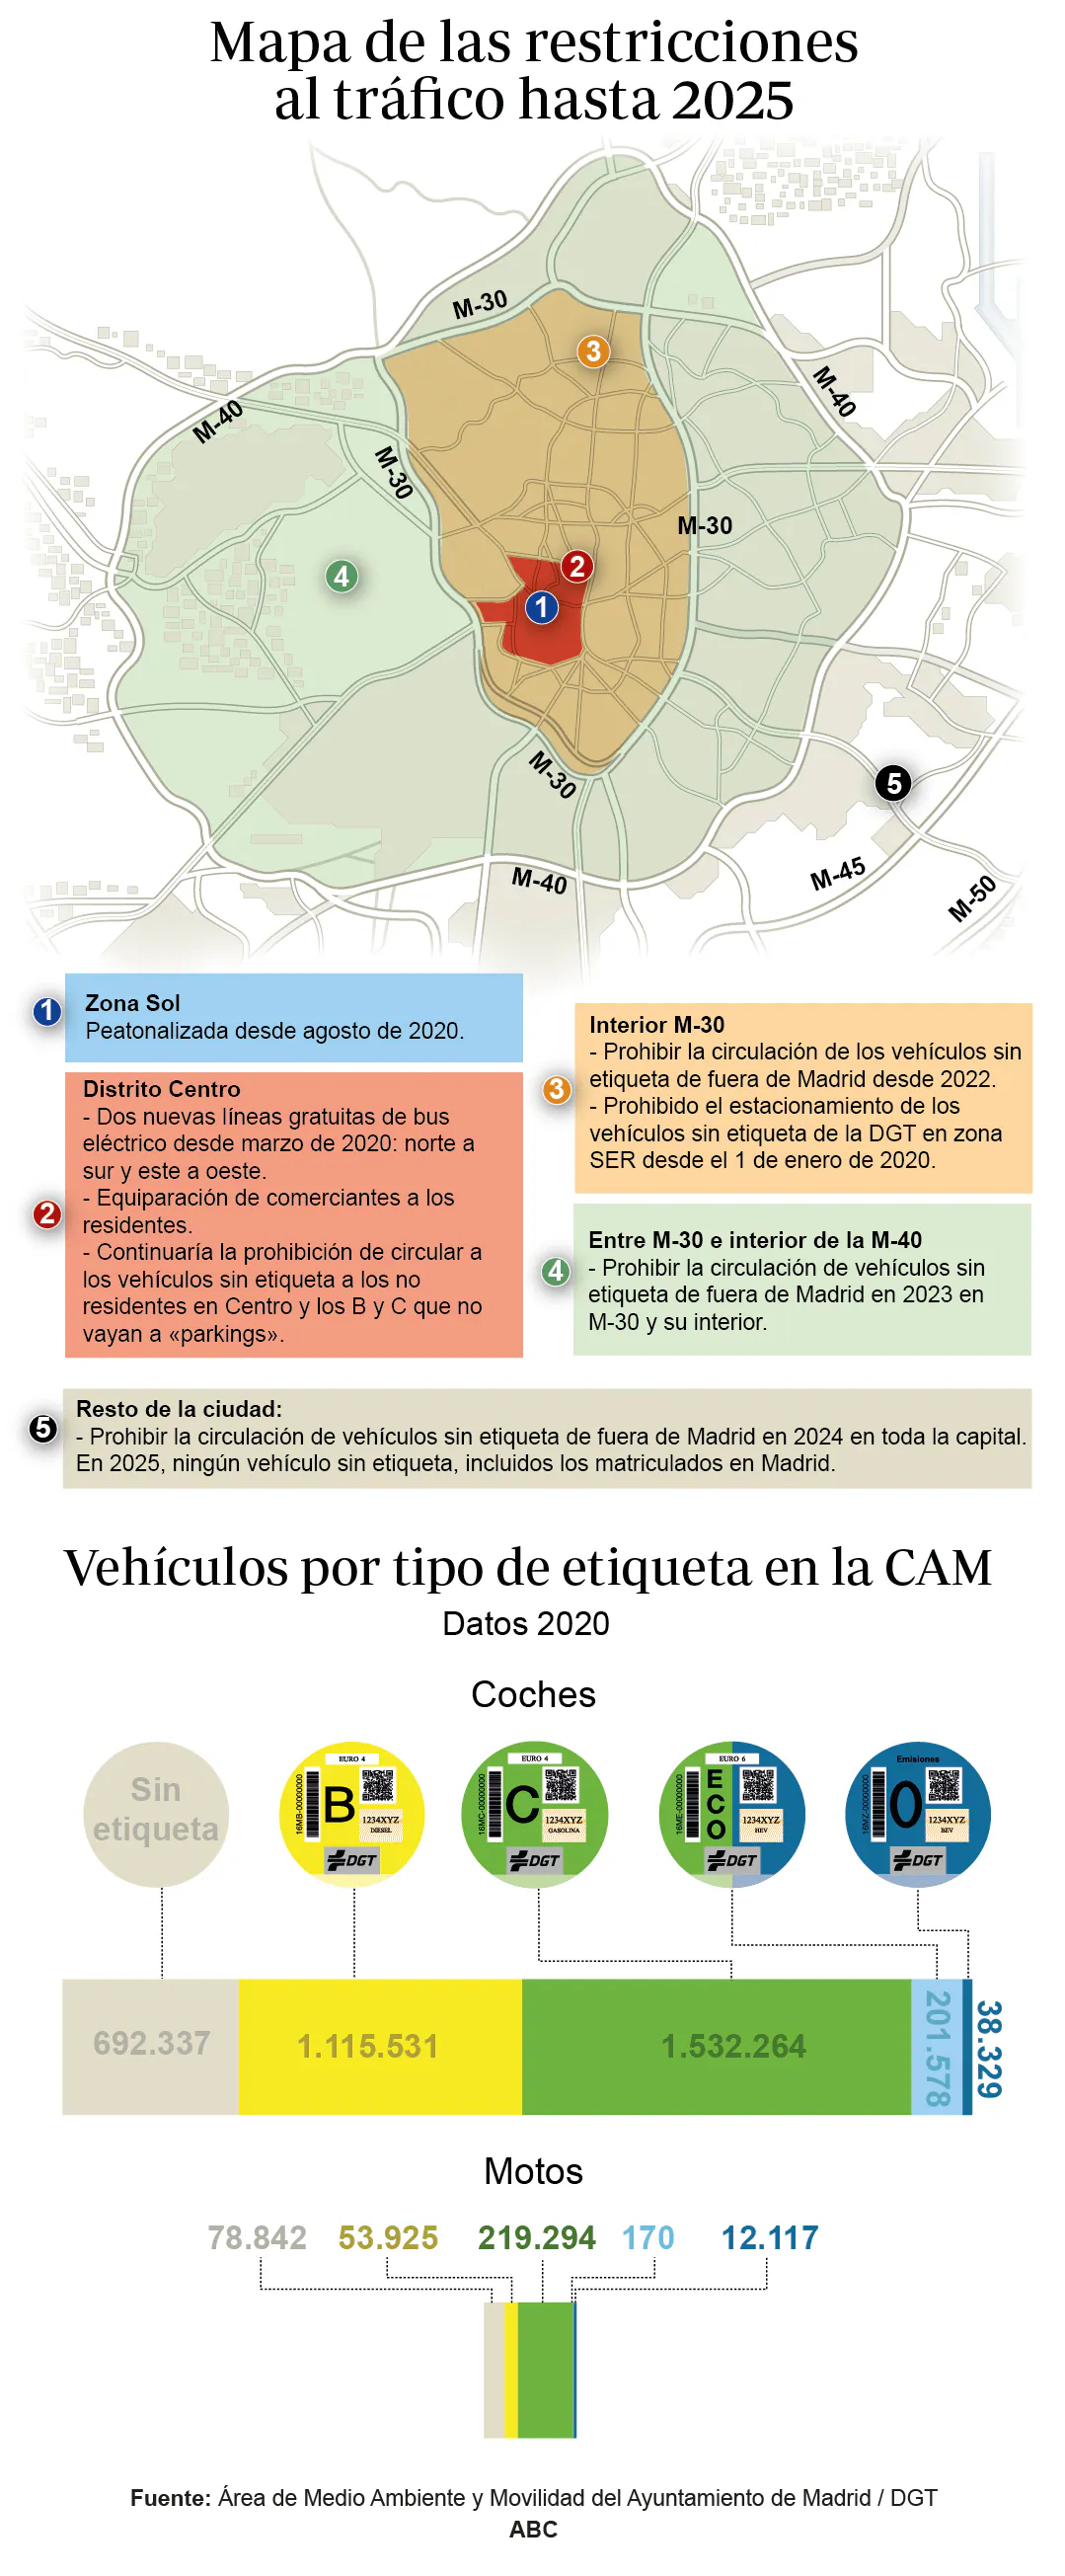 Guía para circular en Madrid: los vehículos sin etiqueta ya no pueden acceder al interior de la M-30